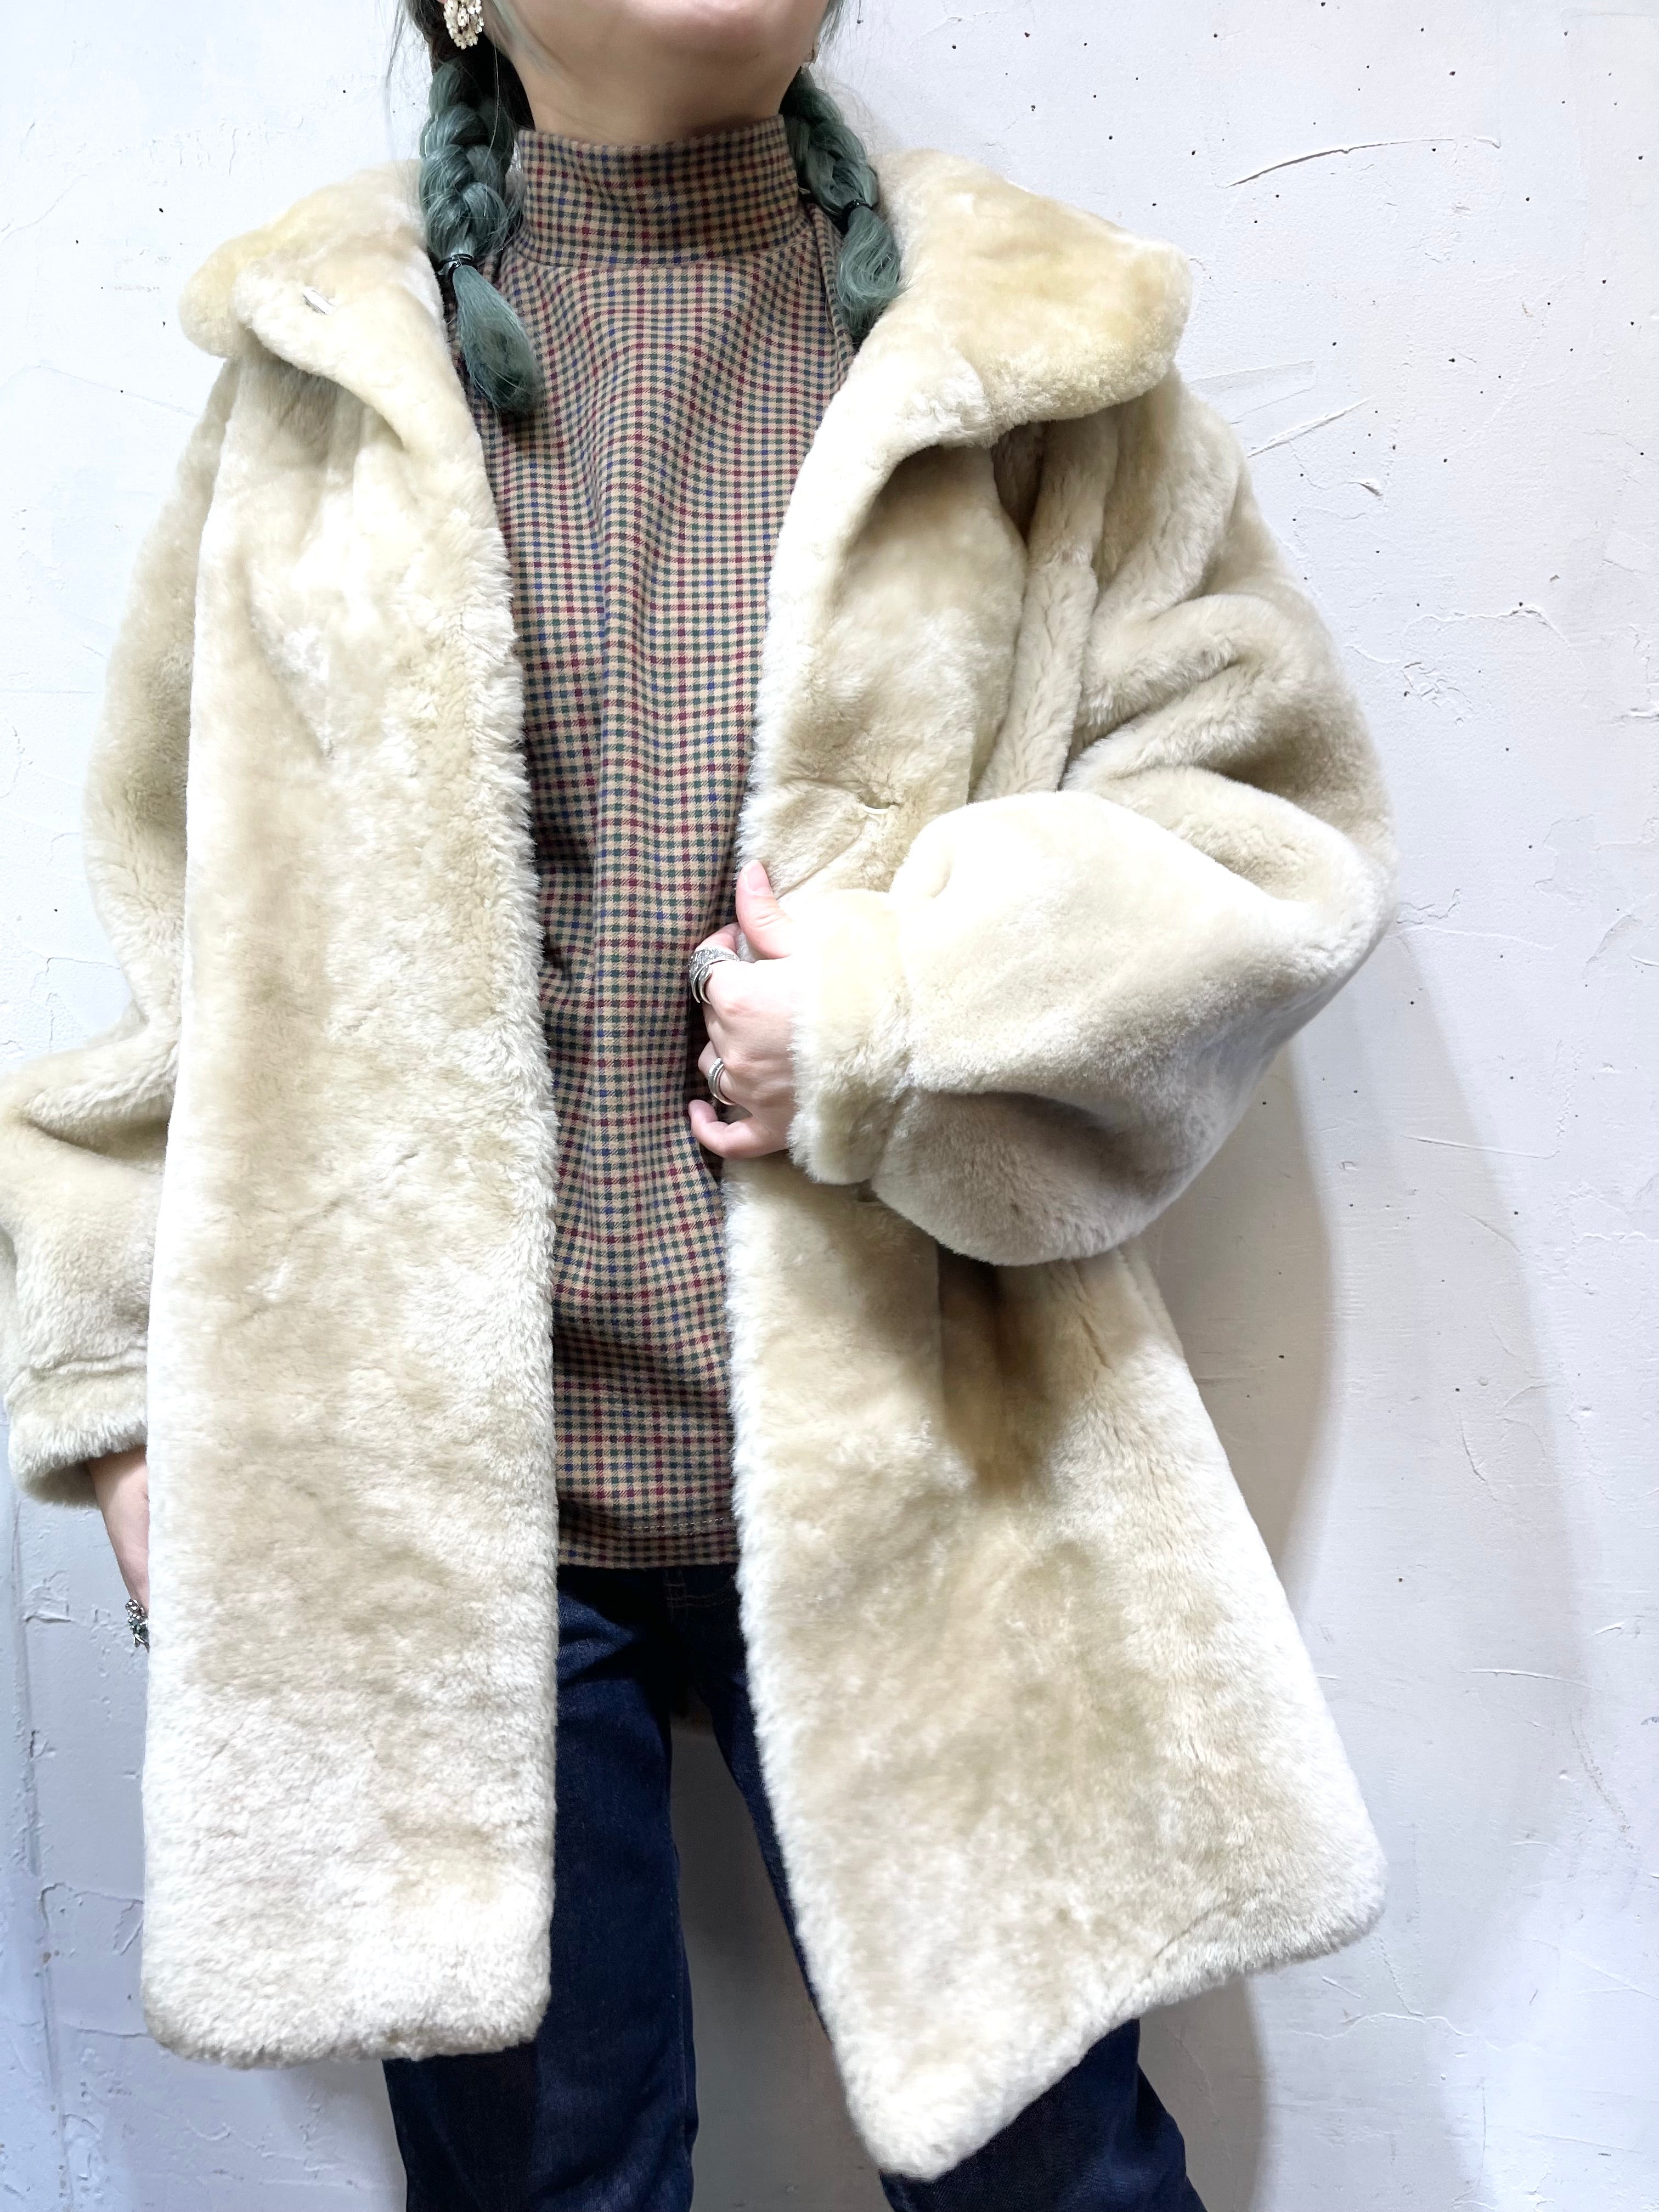 vintage mouton coat